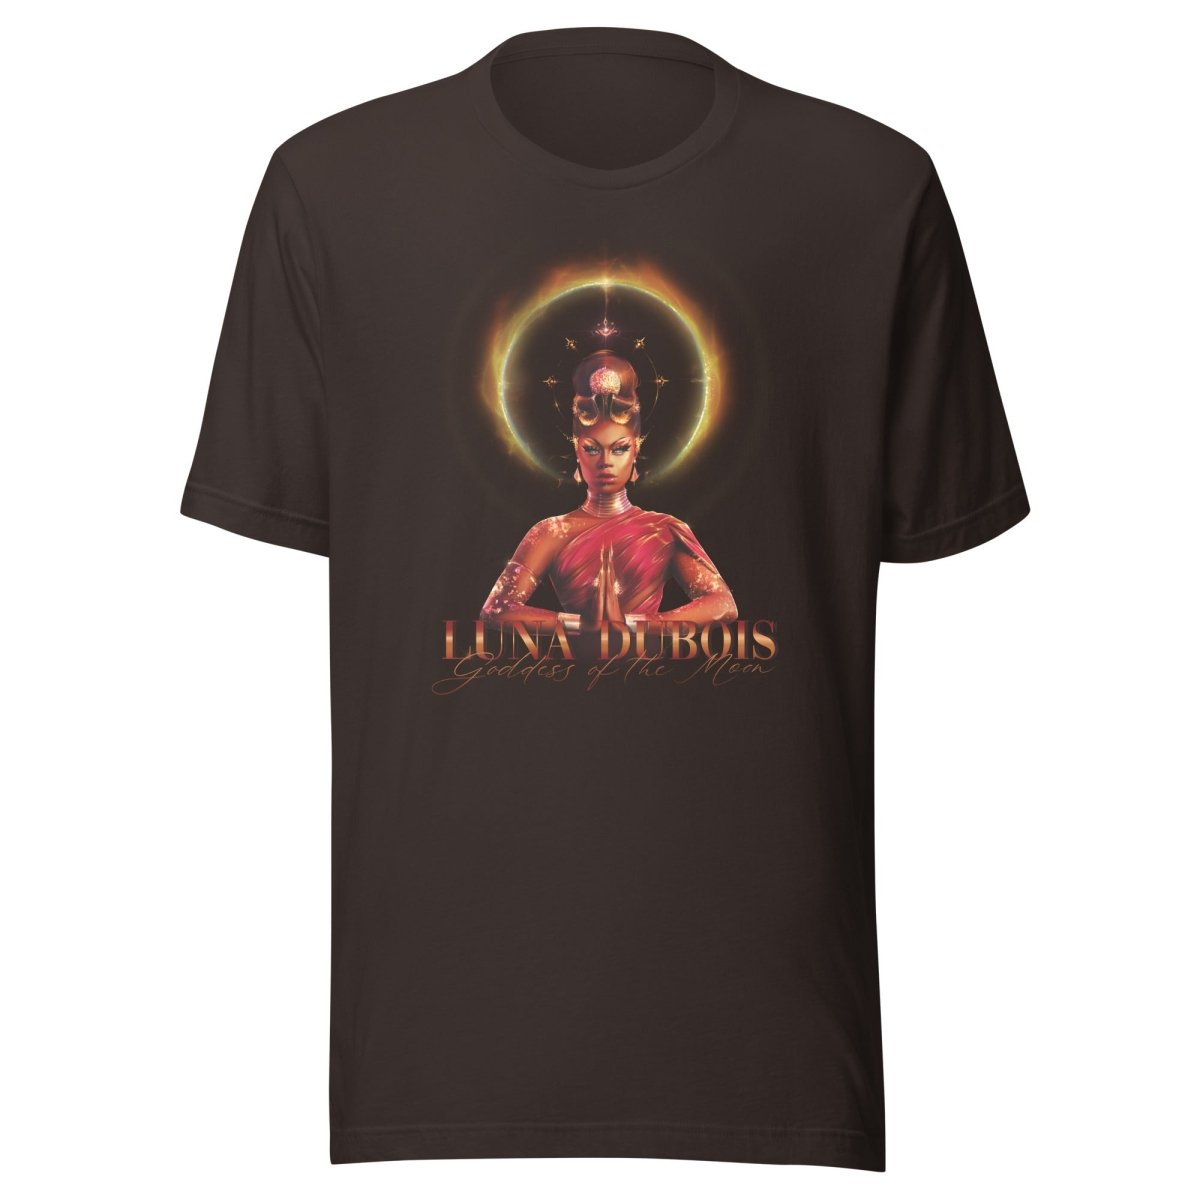 Luna Dubois - Goddess of the Moon T-shirt - dragqueenmerch